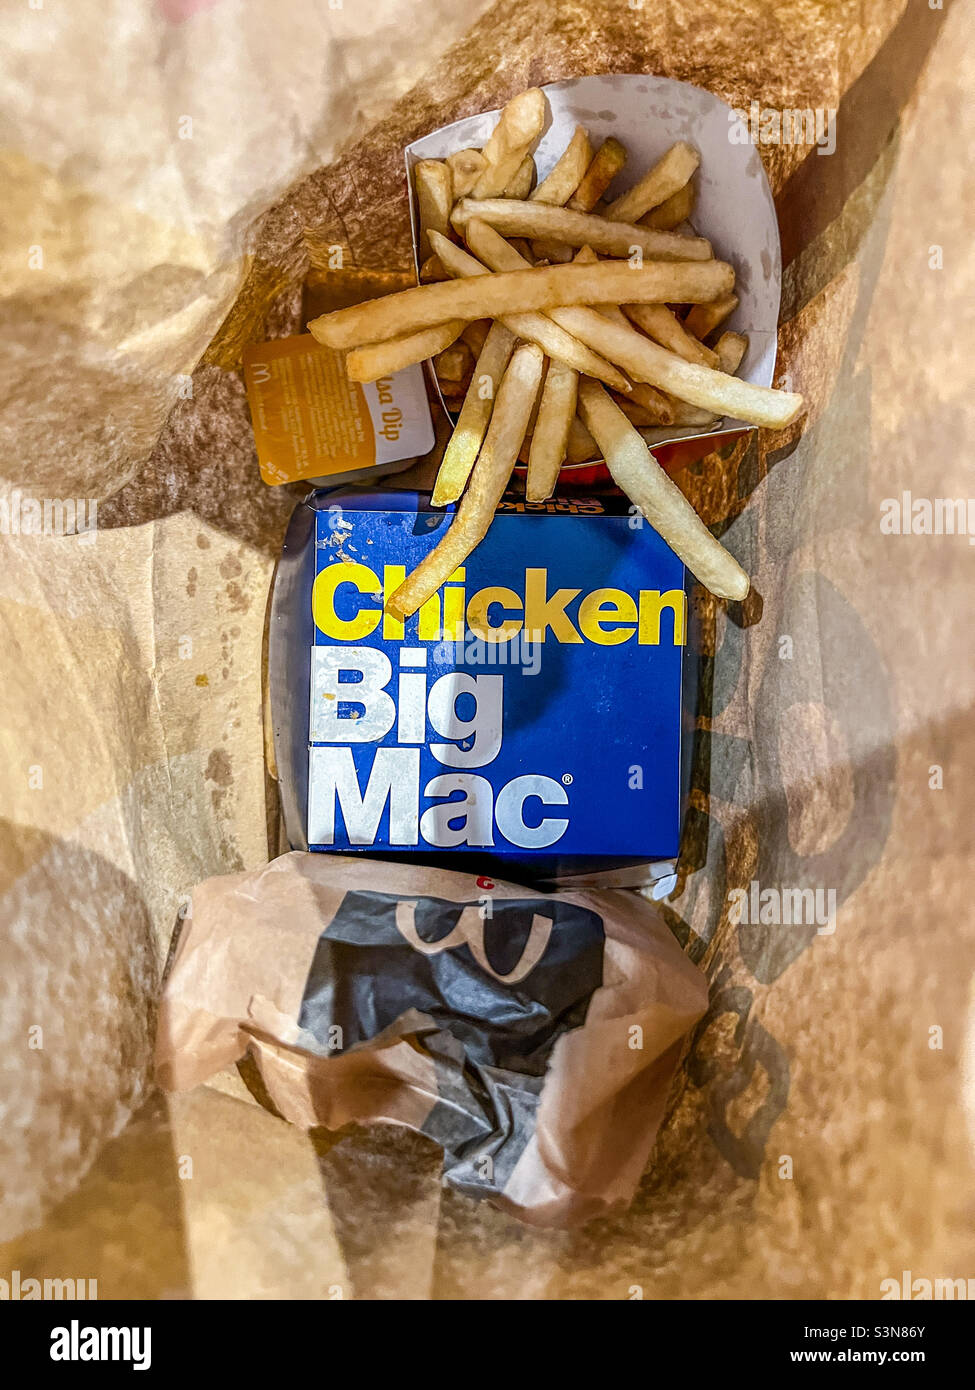 Plat de hamburger Big Mac au poulet McDonald’s avec frites Banque D'Images